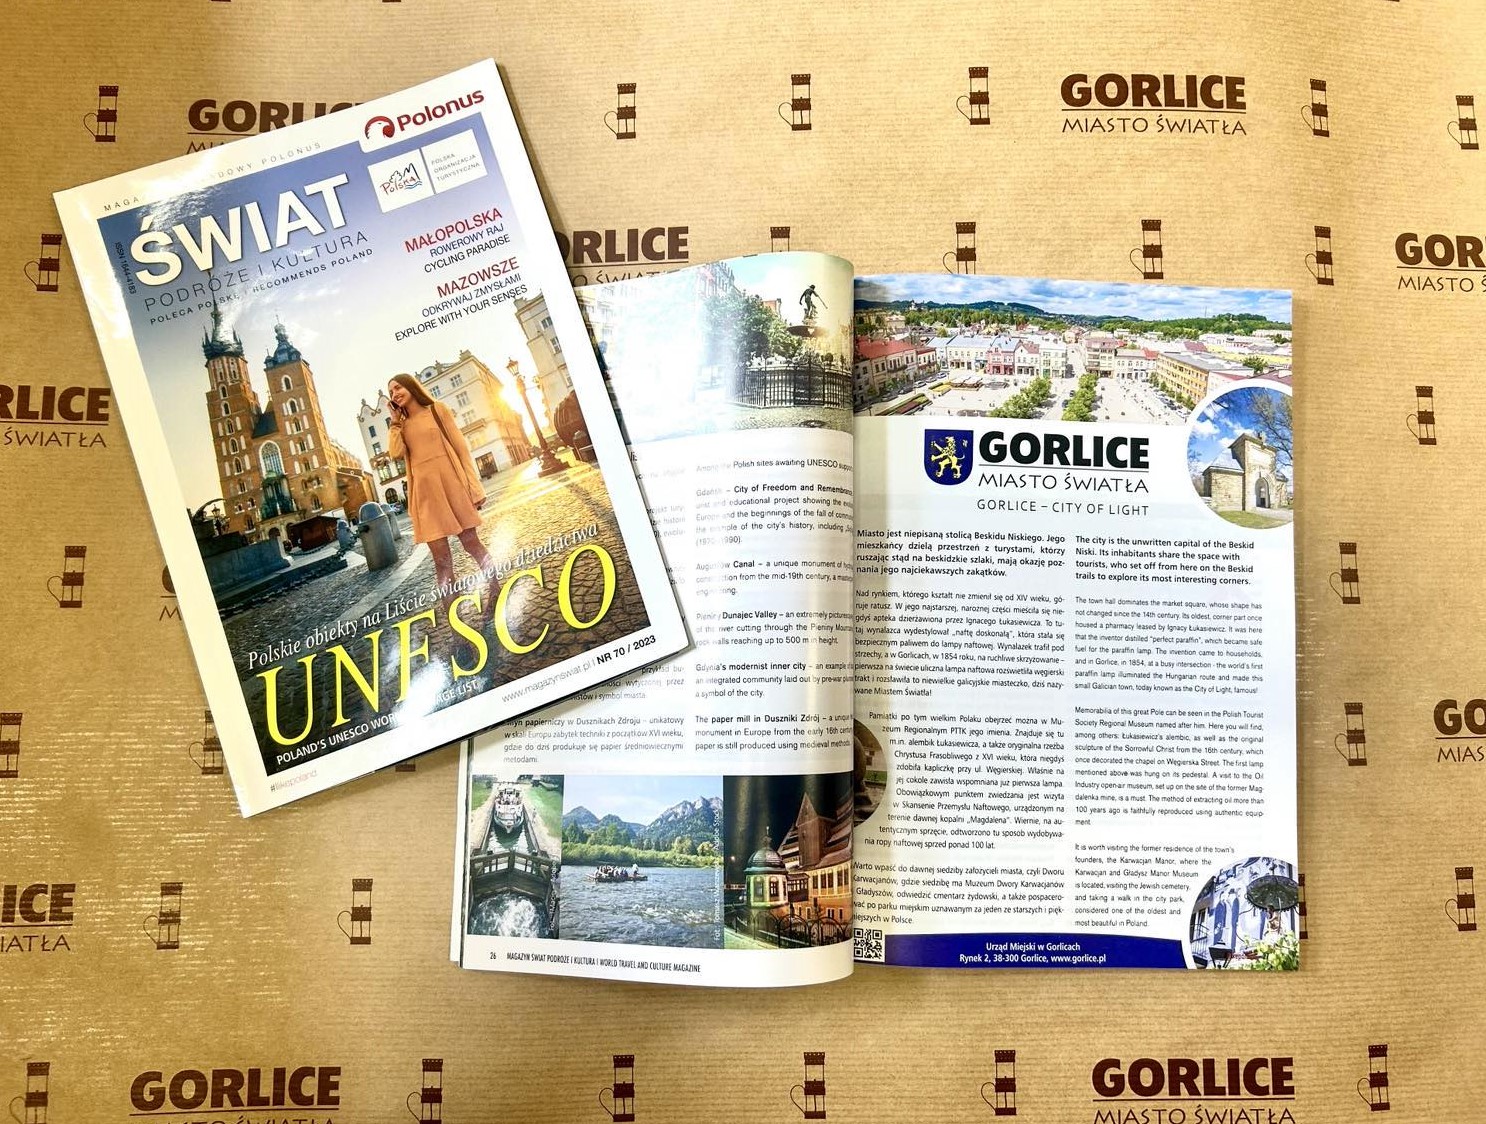 Magazyn „ŚWIAT PODRÓŻE KULTURA – Poleca Polskę” - od lewej: okładka, strona z artykułem o Gorlicach